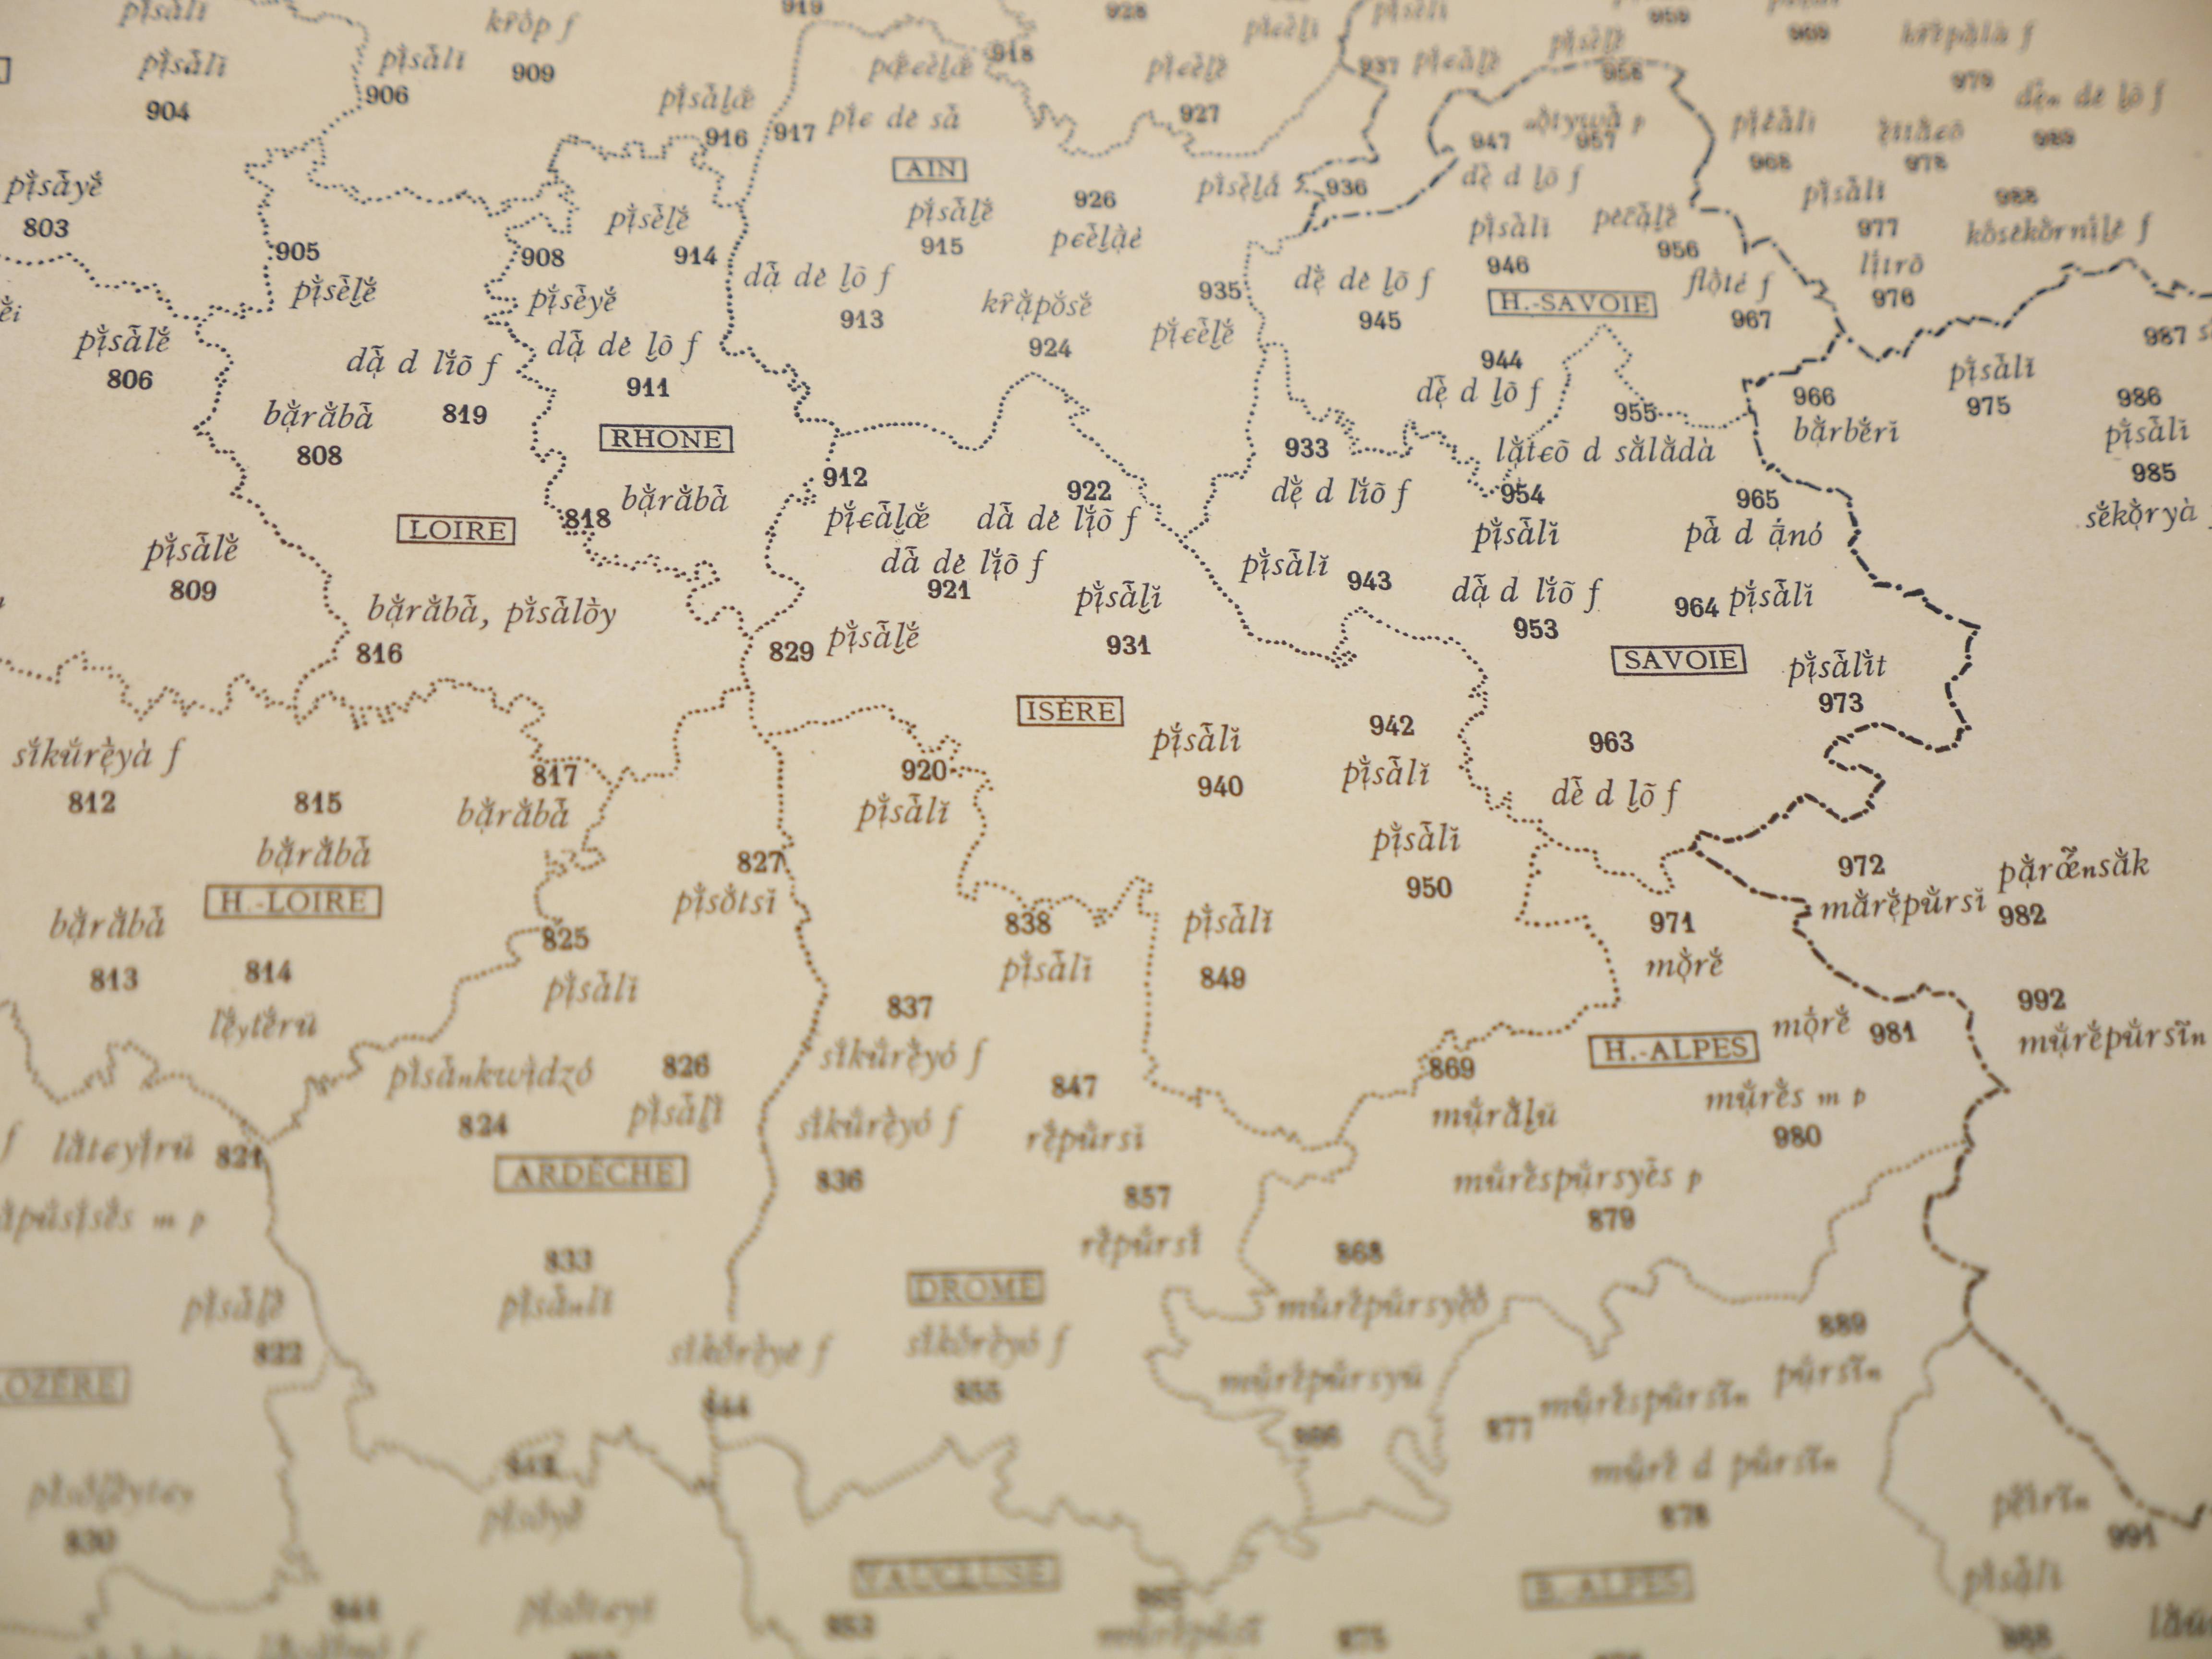 Points d’étude en Isère et départements voisins pour la carte linguistique du pissenlit